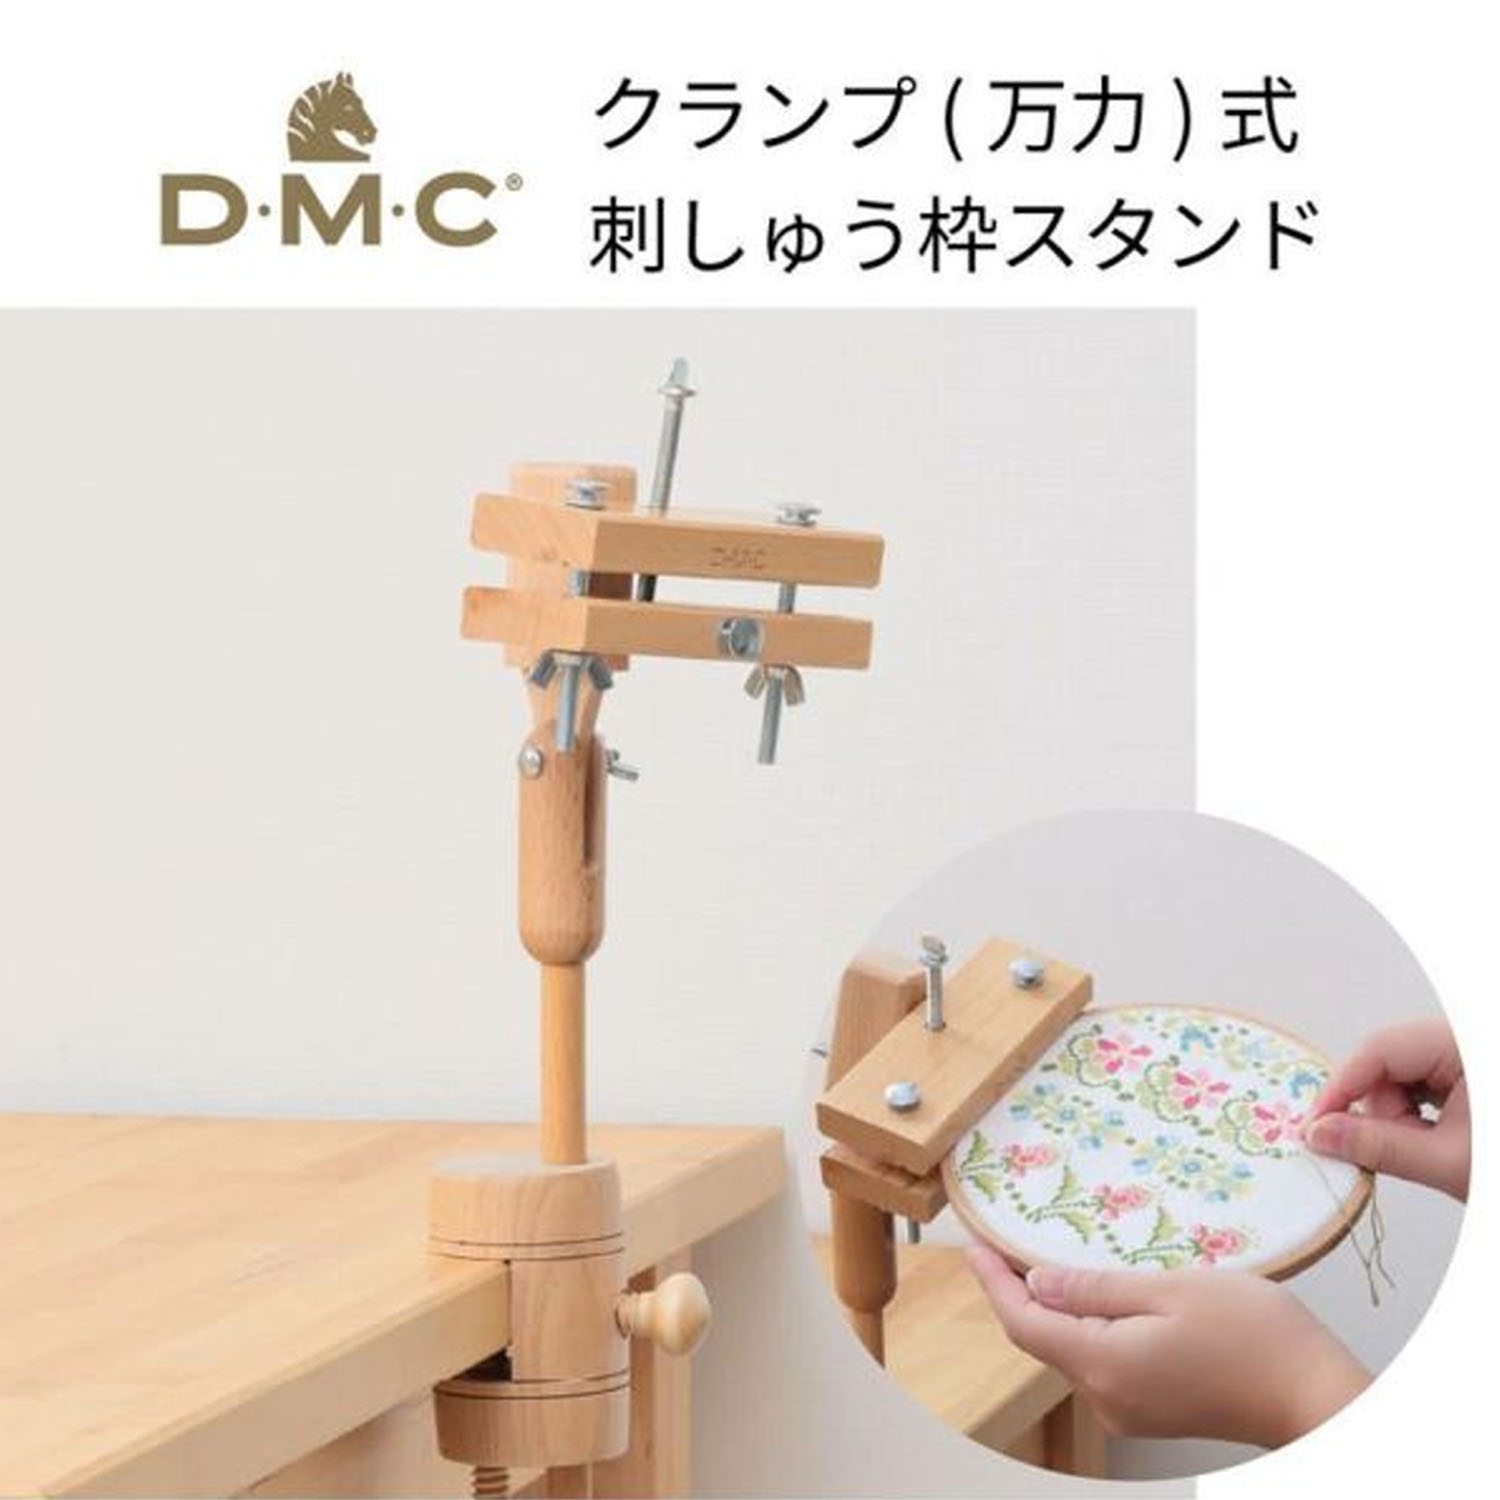 【お取り寄せ・返品不可】DMC-MK0035 DMC クランプ(万力)式 刺繍枠スタンド (個)